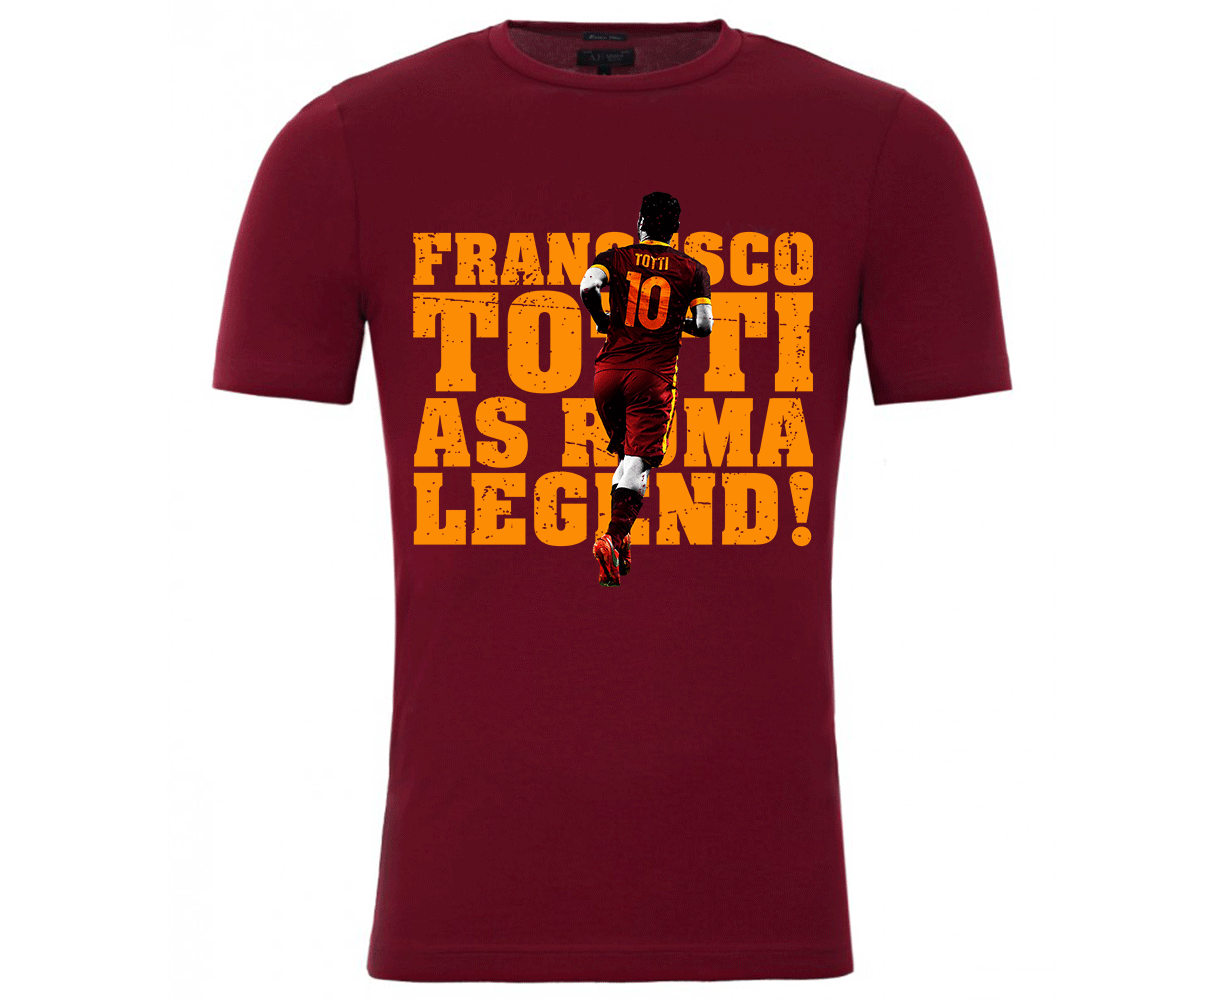 Francesco Totti Roma Legend T-Shirt (Burgundy)